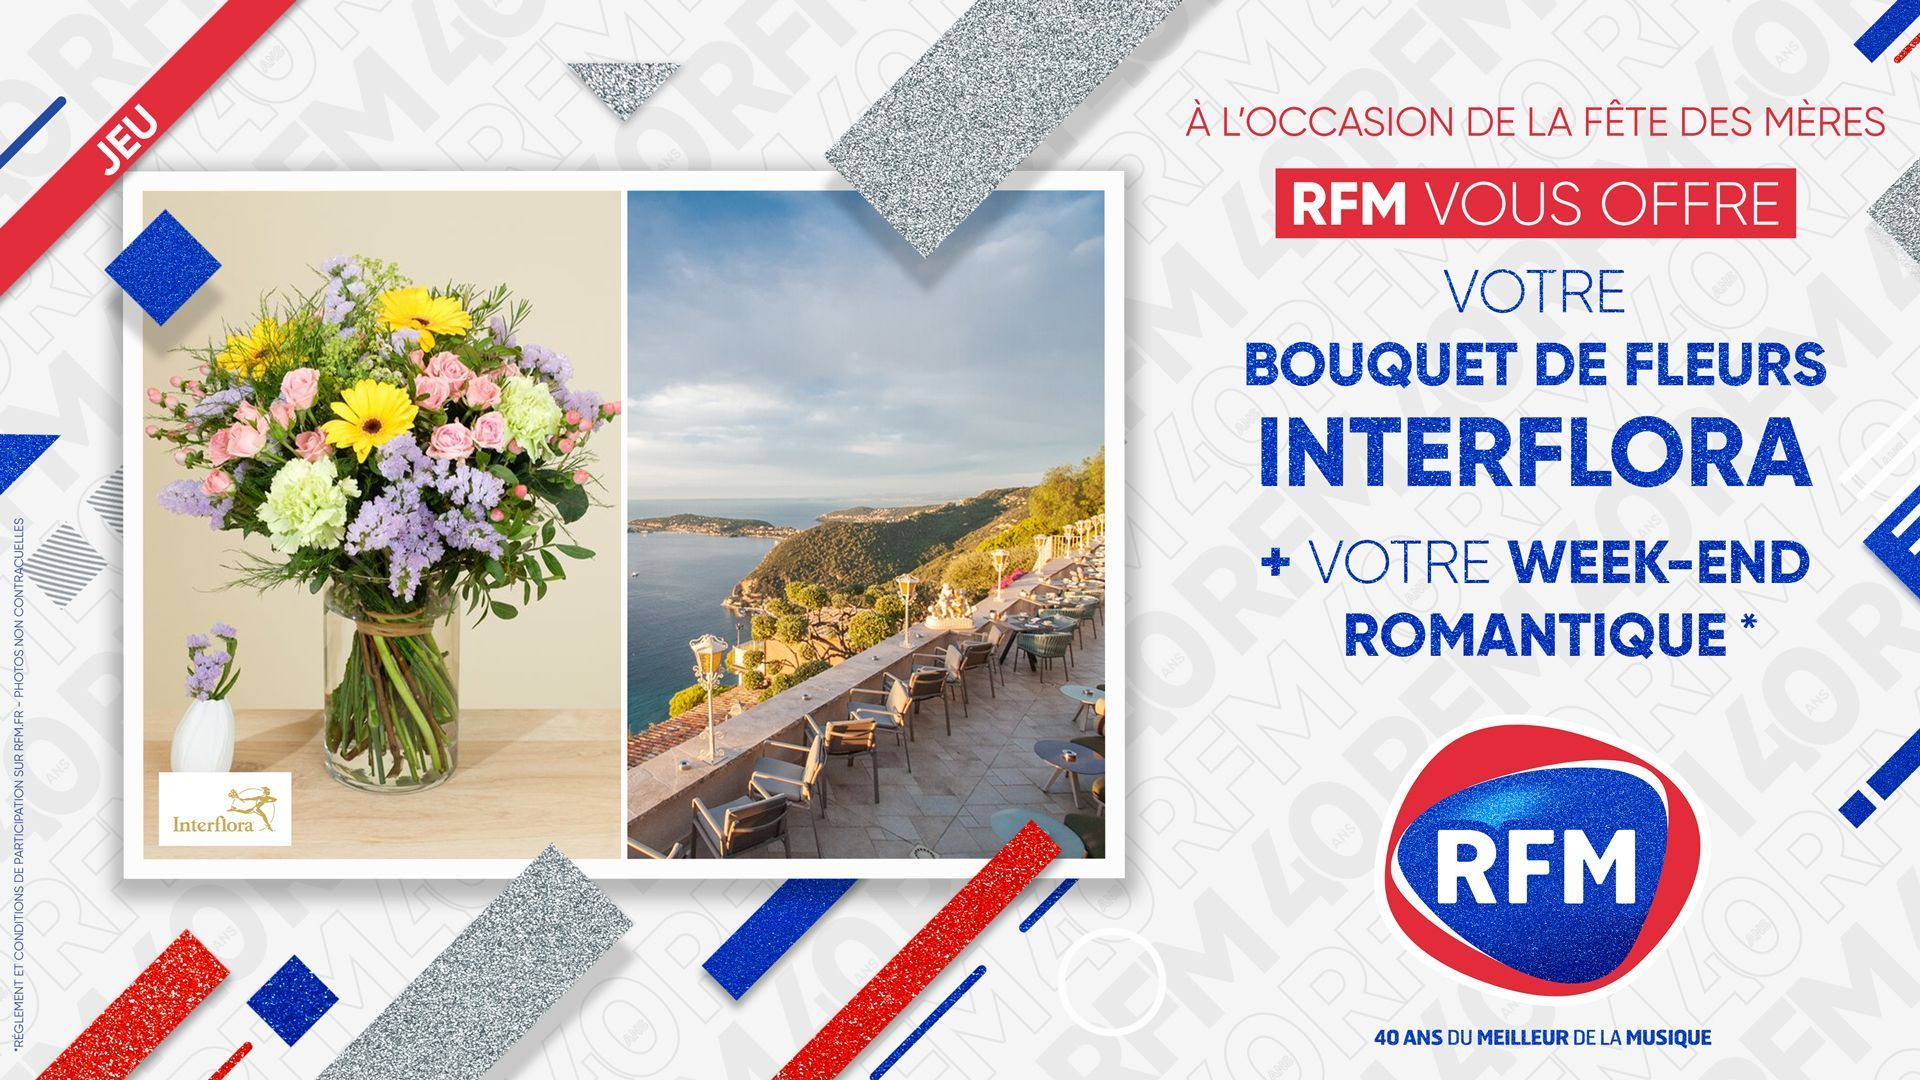 RFM vous offre un bouquet de fleur Interflora ainsi qu'un week-end  romantique !